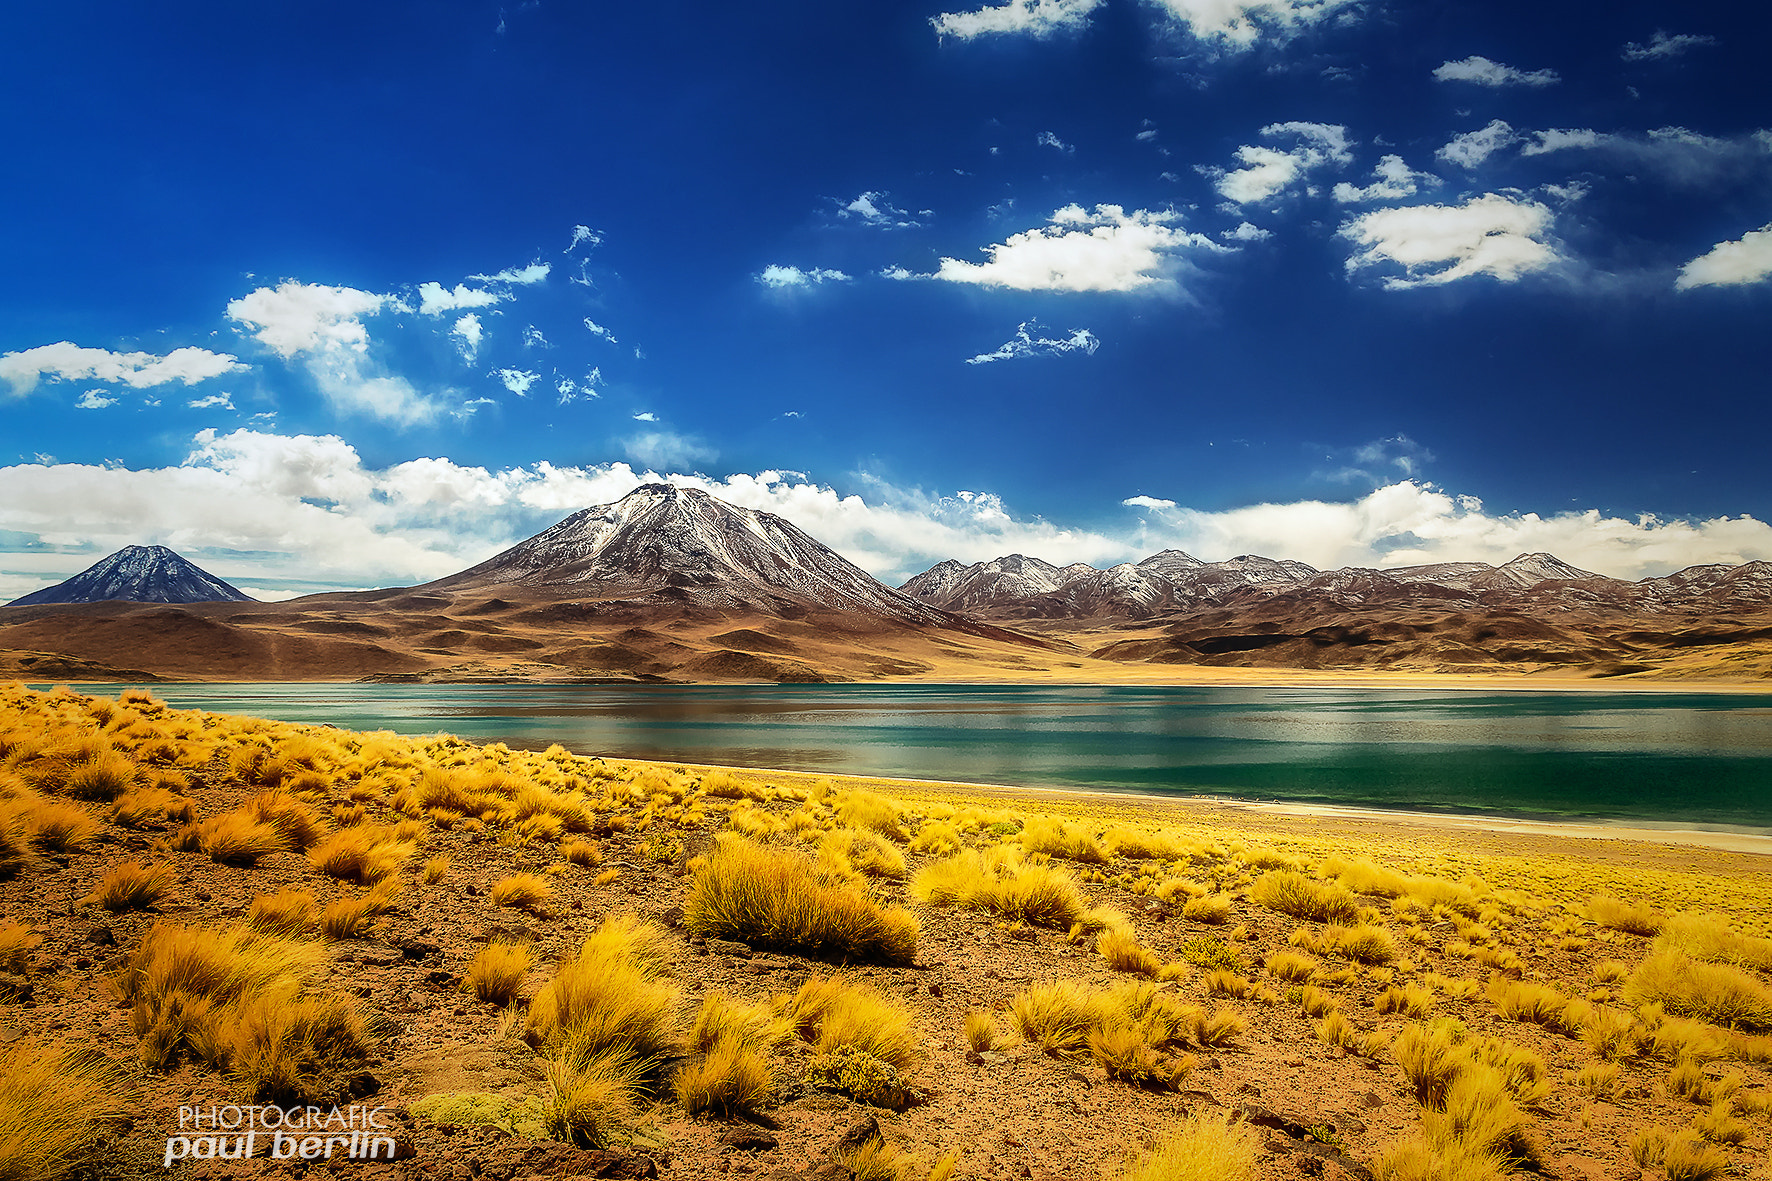 Sony a7R + Sony E 18-200mm F3.5-6.3 OSS sample photo. Atacama highlands photography